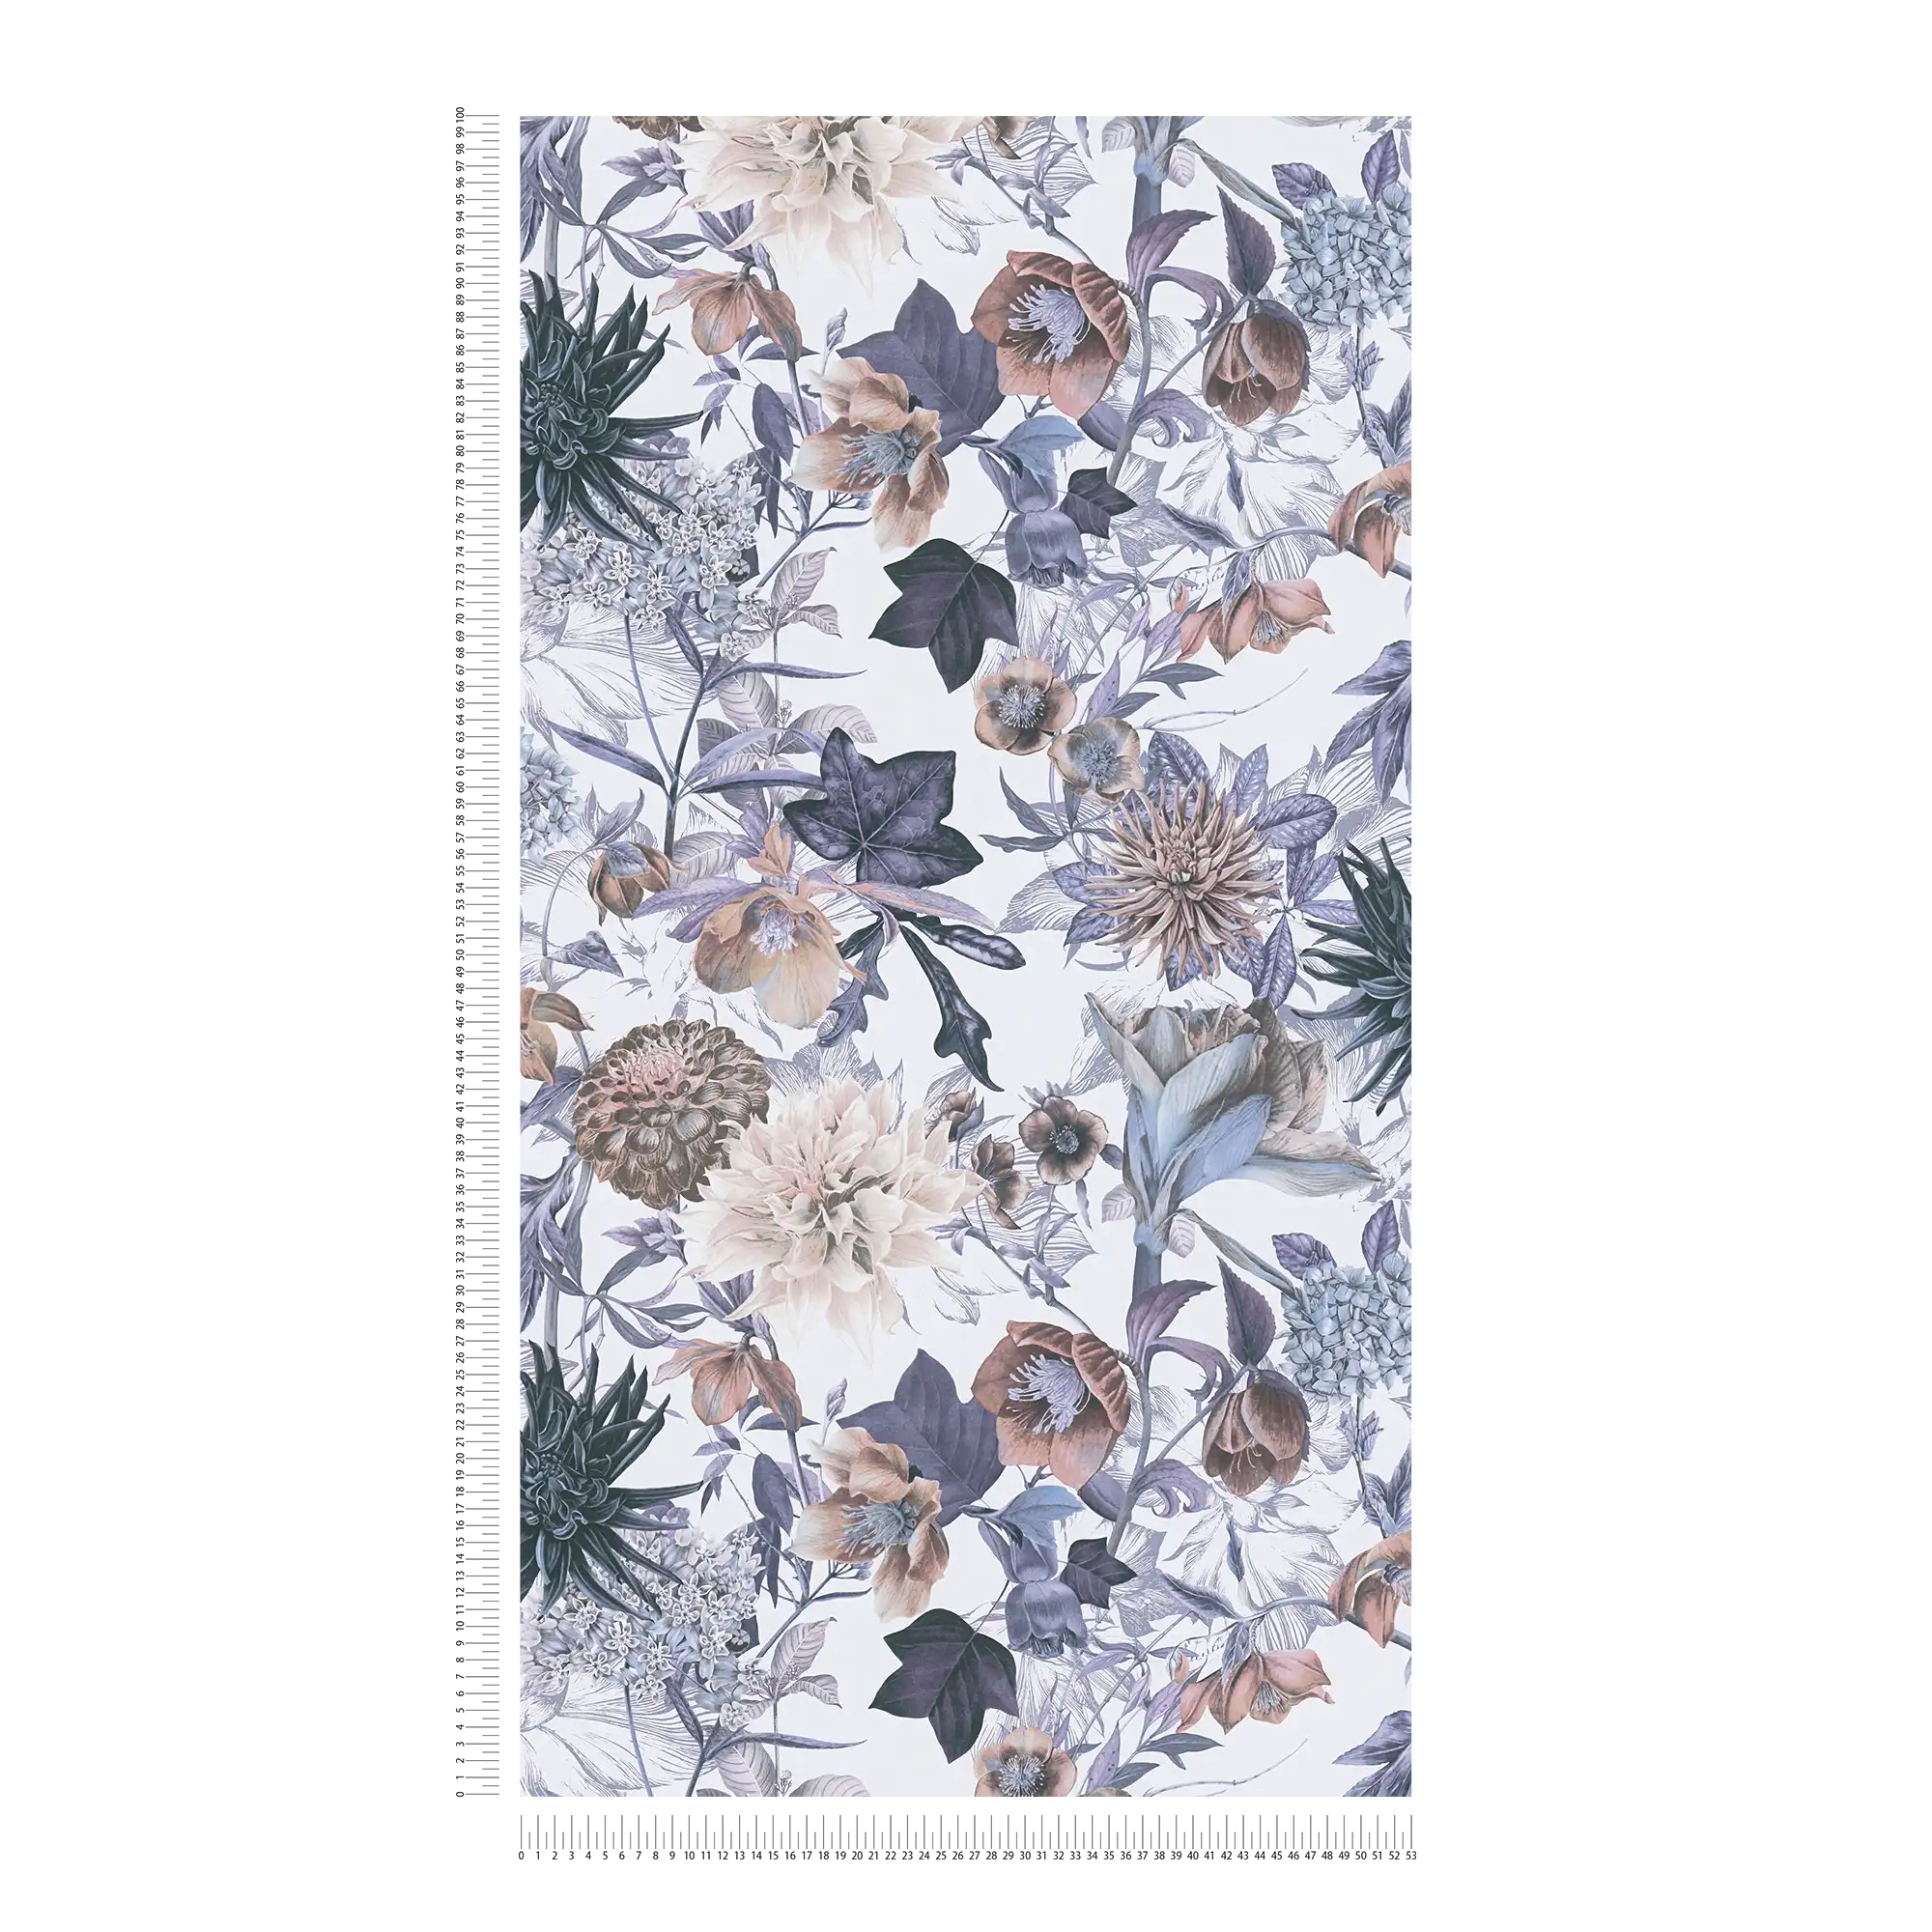             Behang met bloemenpatroon - blauw, bruin, grijs
        